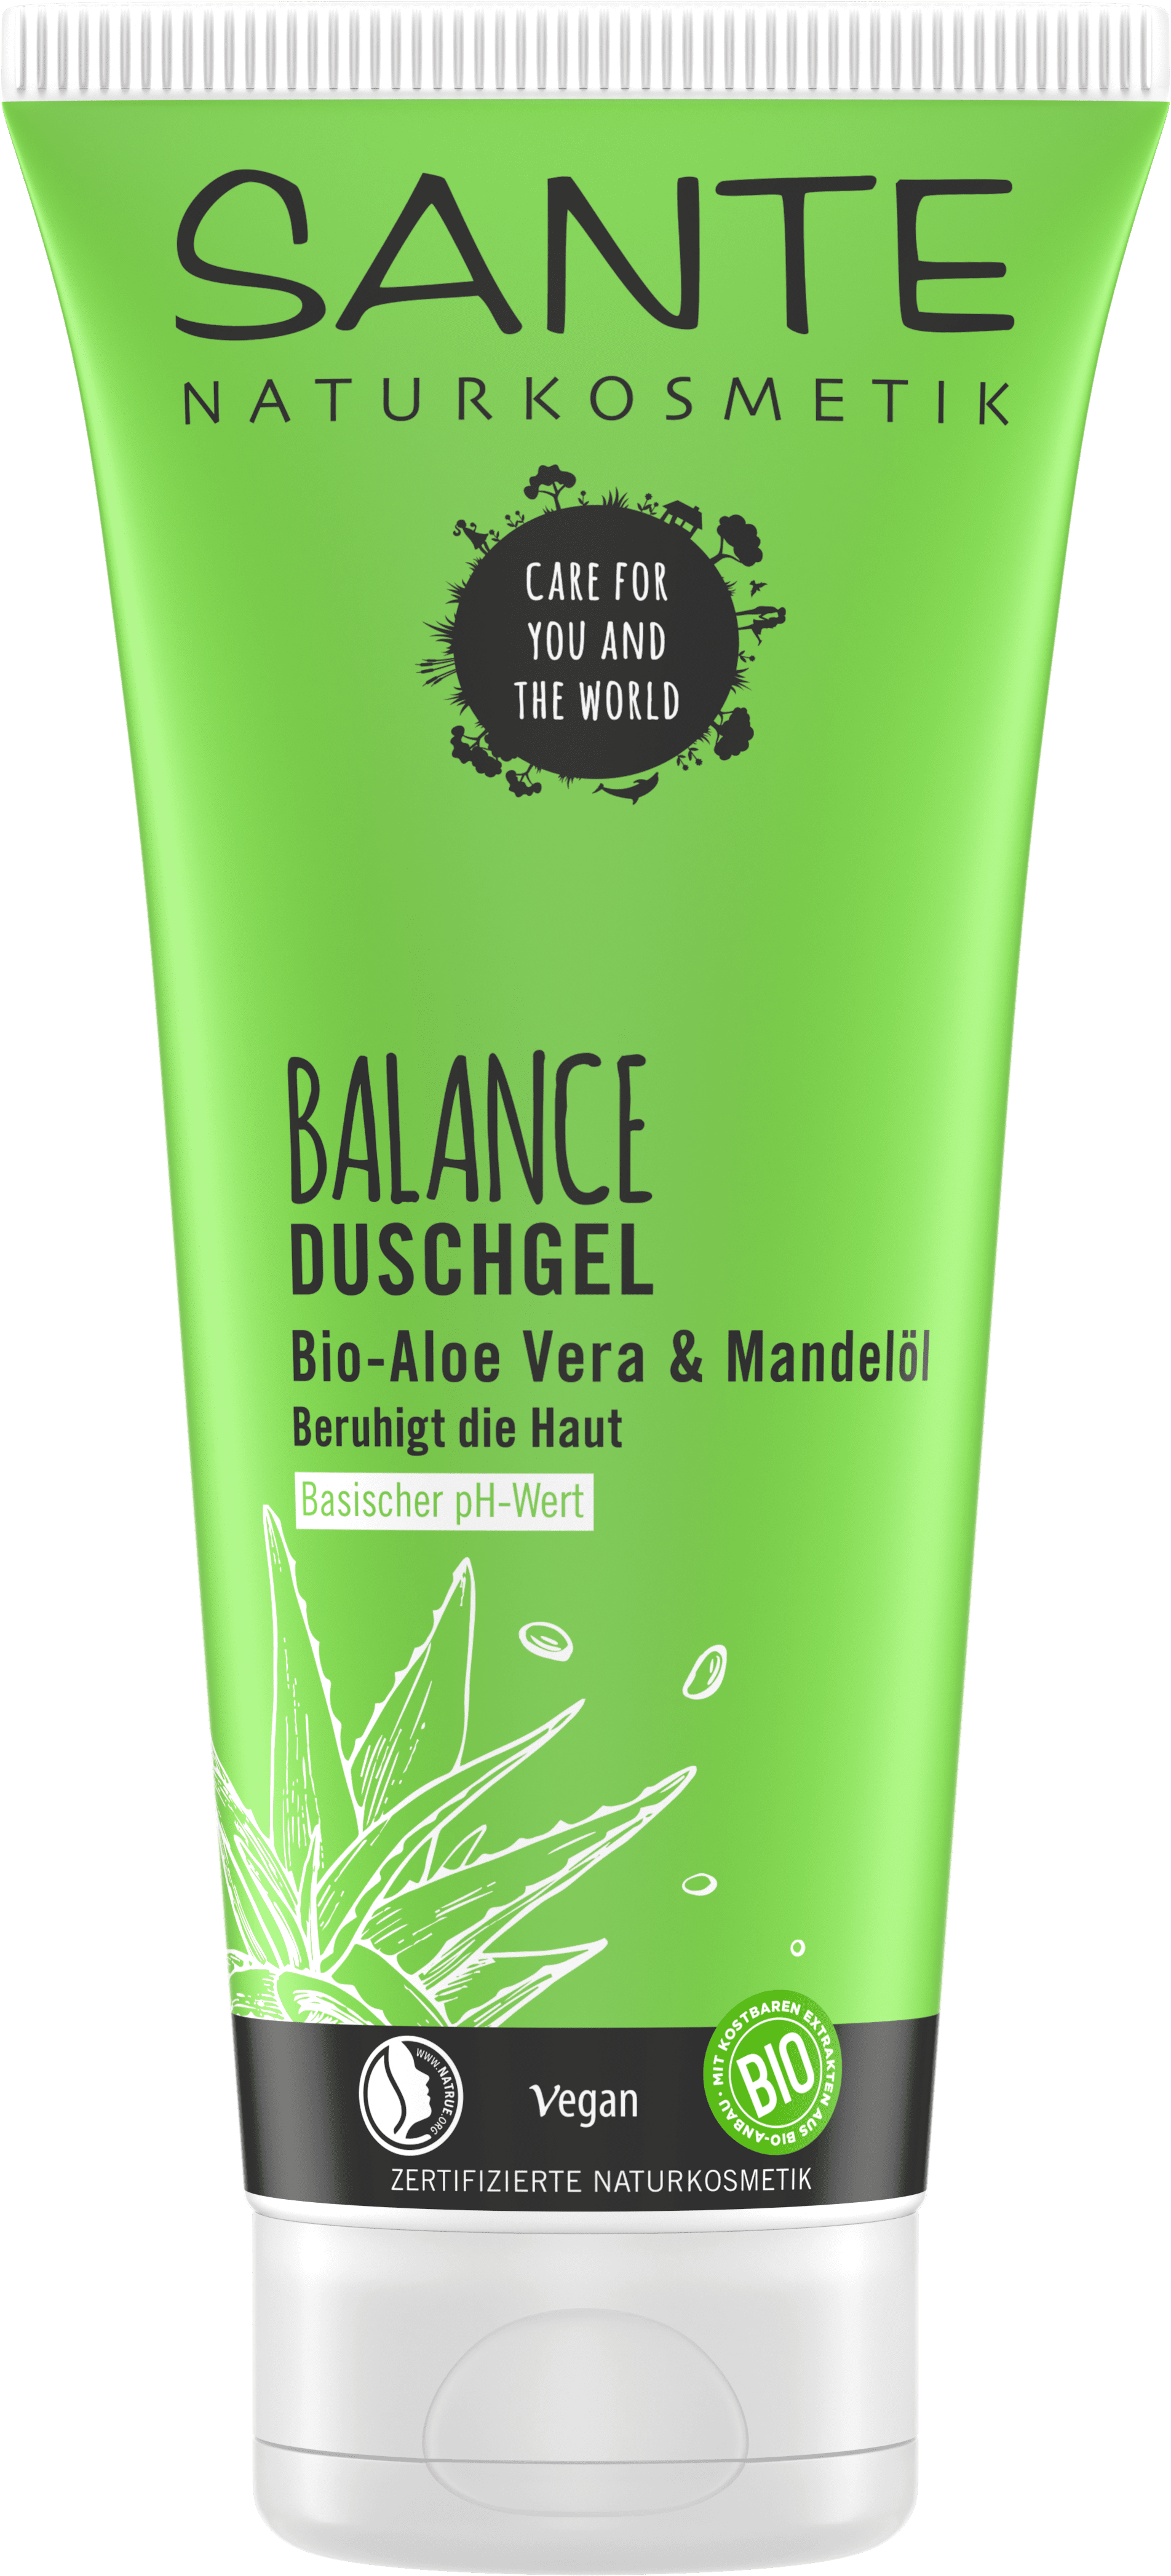 BALANCE | Duschgel Naturkosmetik SANTE